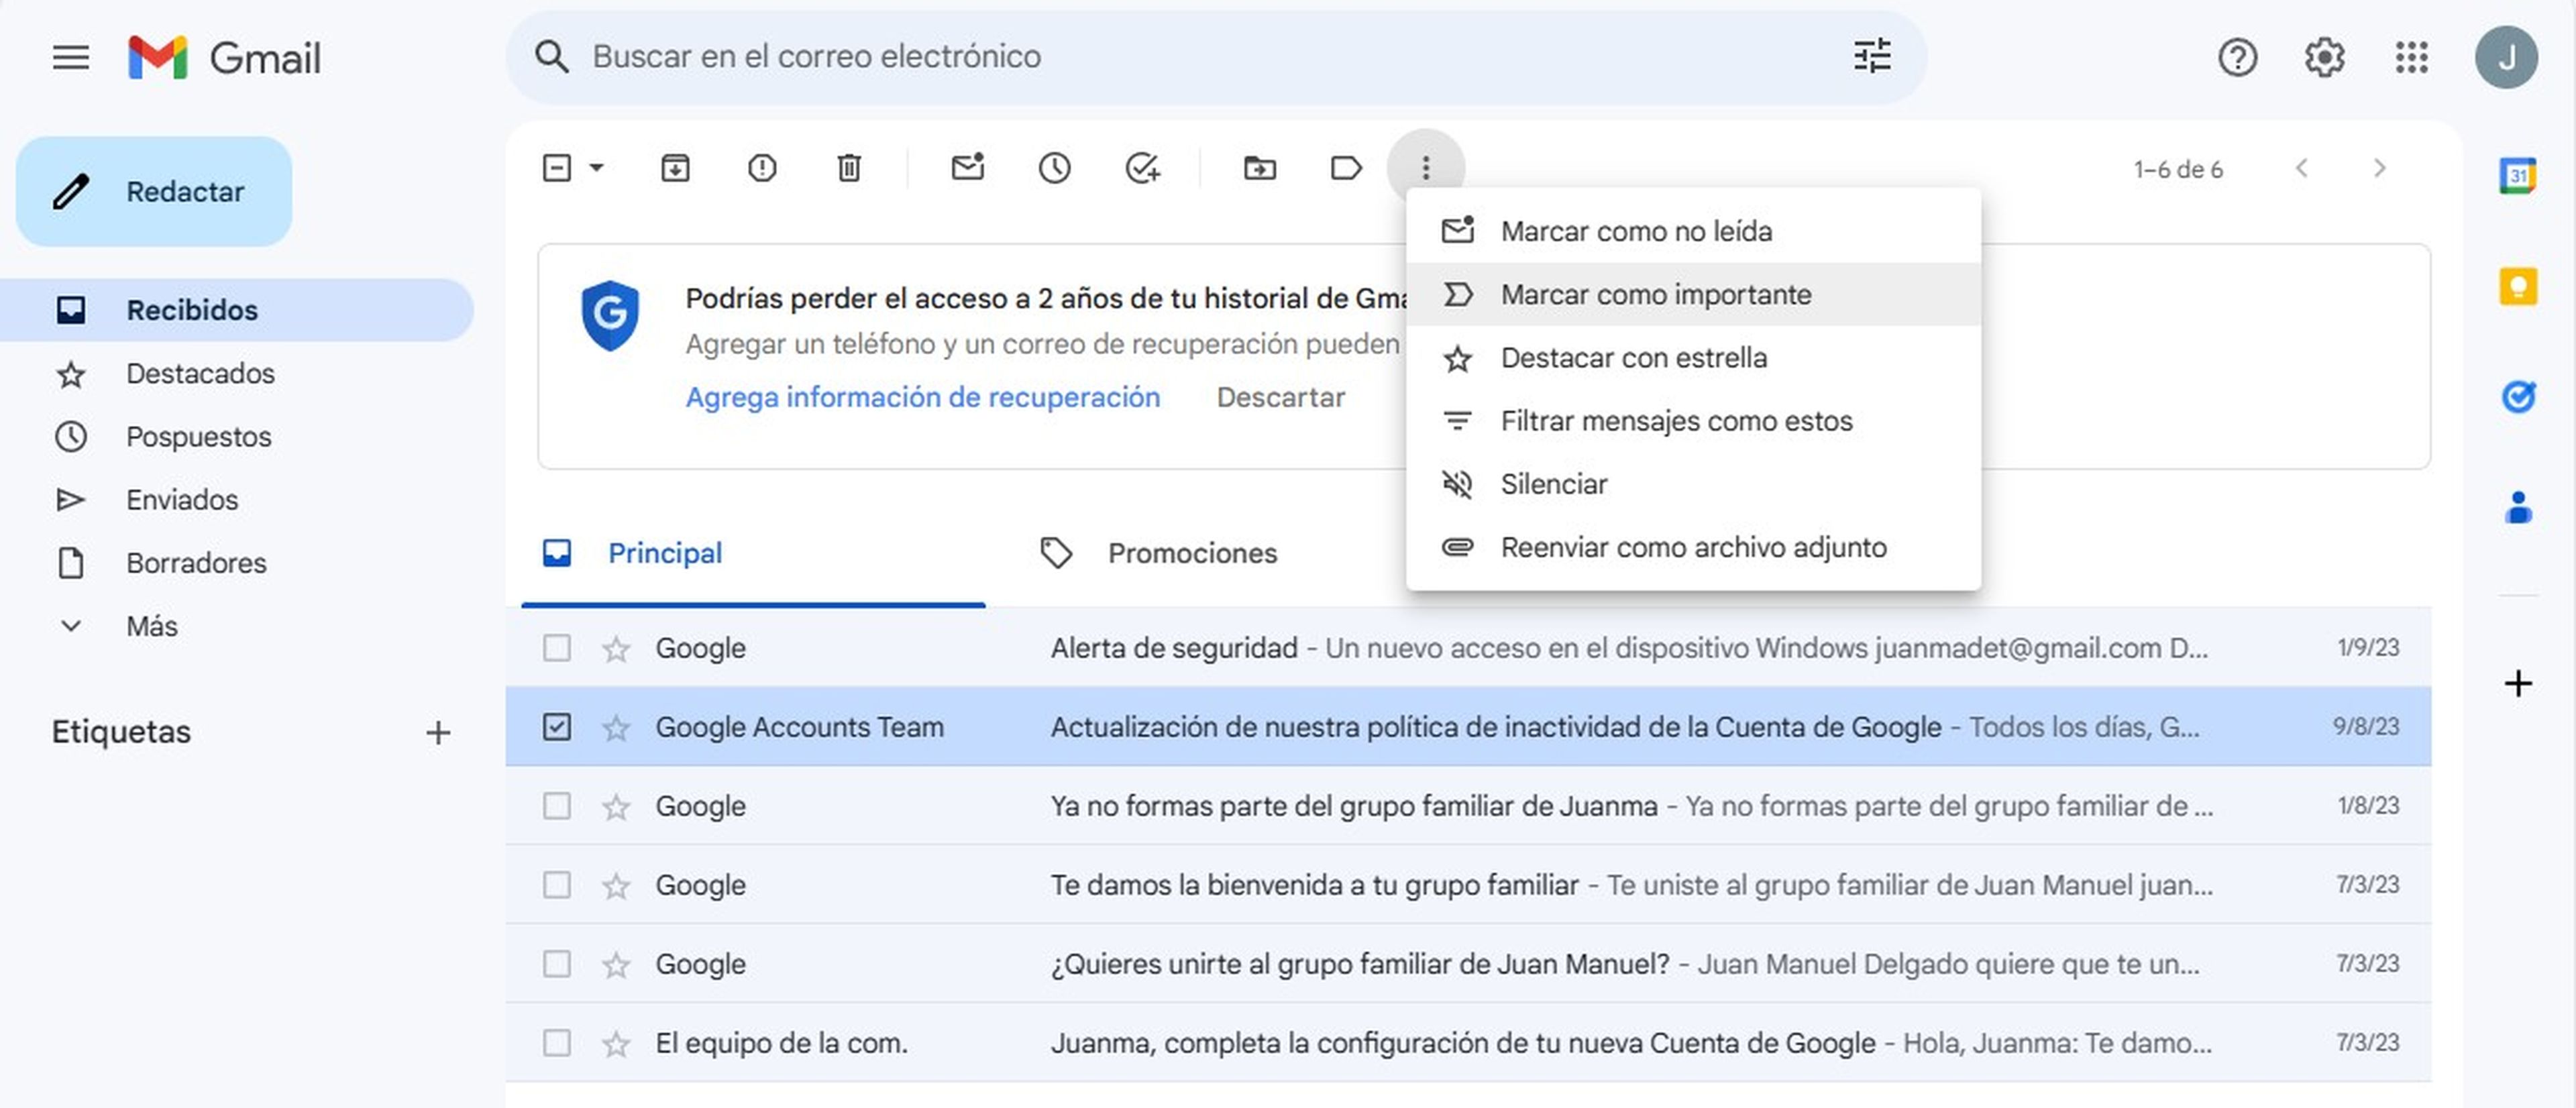 Así puedes etiquetar un correo de Gmail como urgente o de alta prioridad